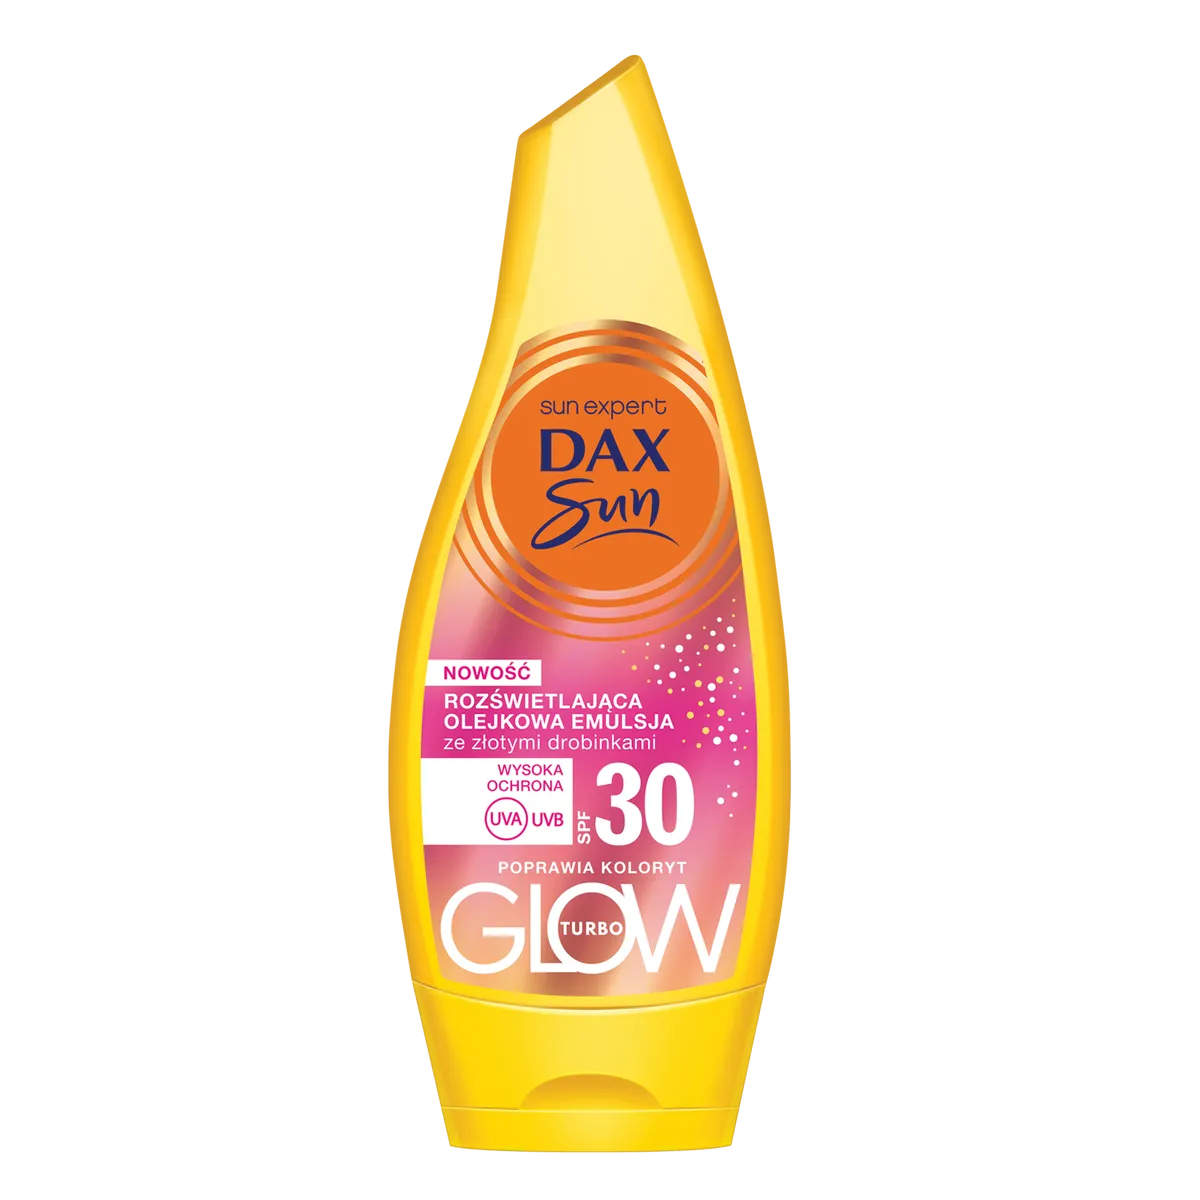 Dax Sun Turbo Glow rozświetlająca olejkowa emulsja ze złotymi drobinkami SPF30, 175 ml